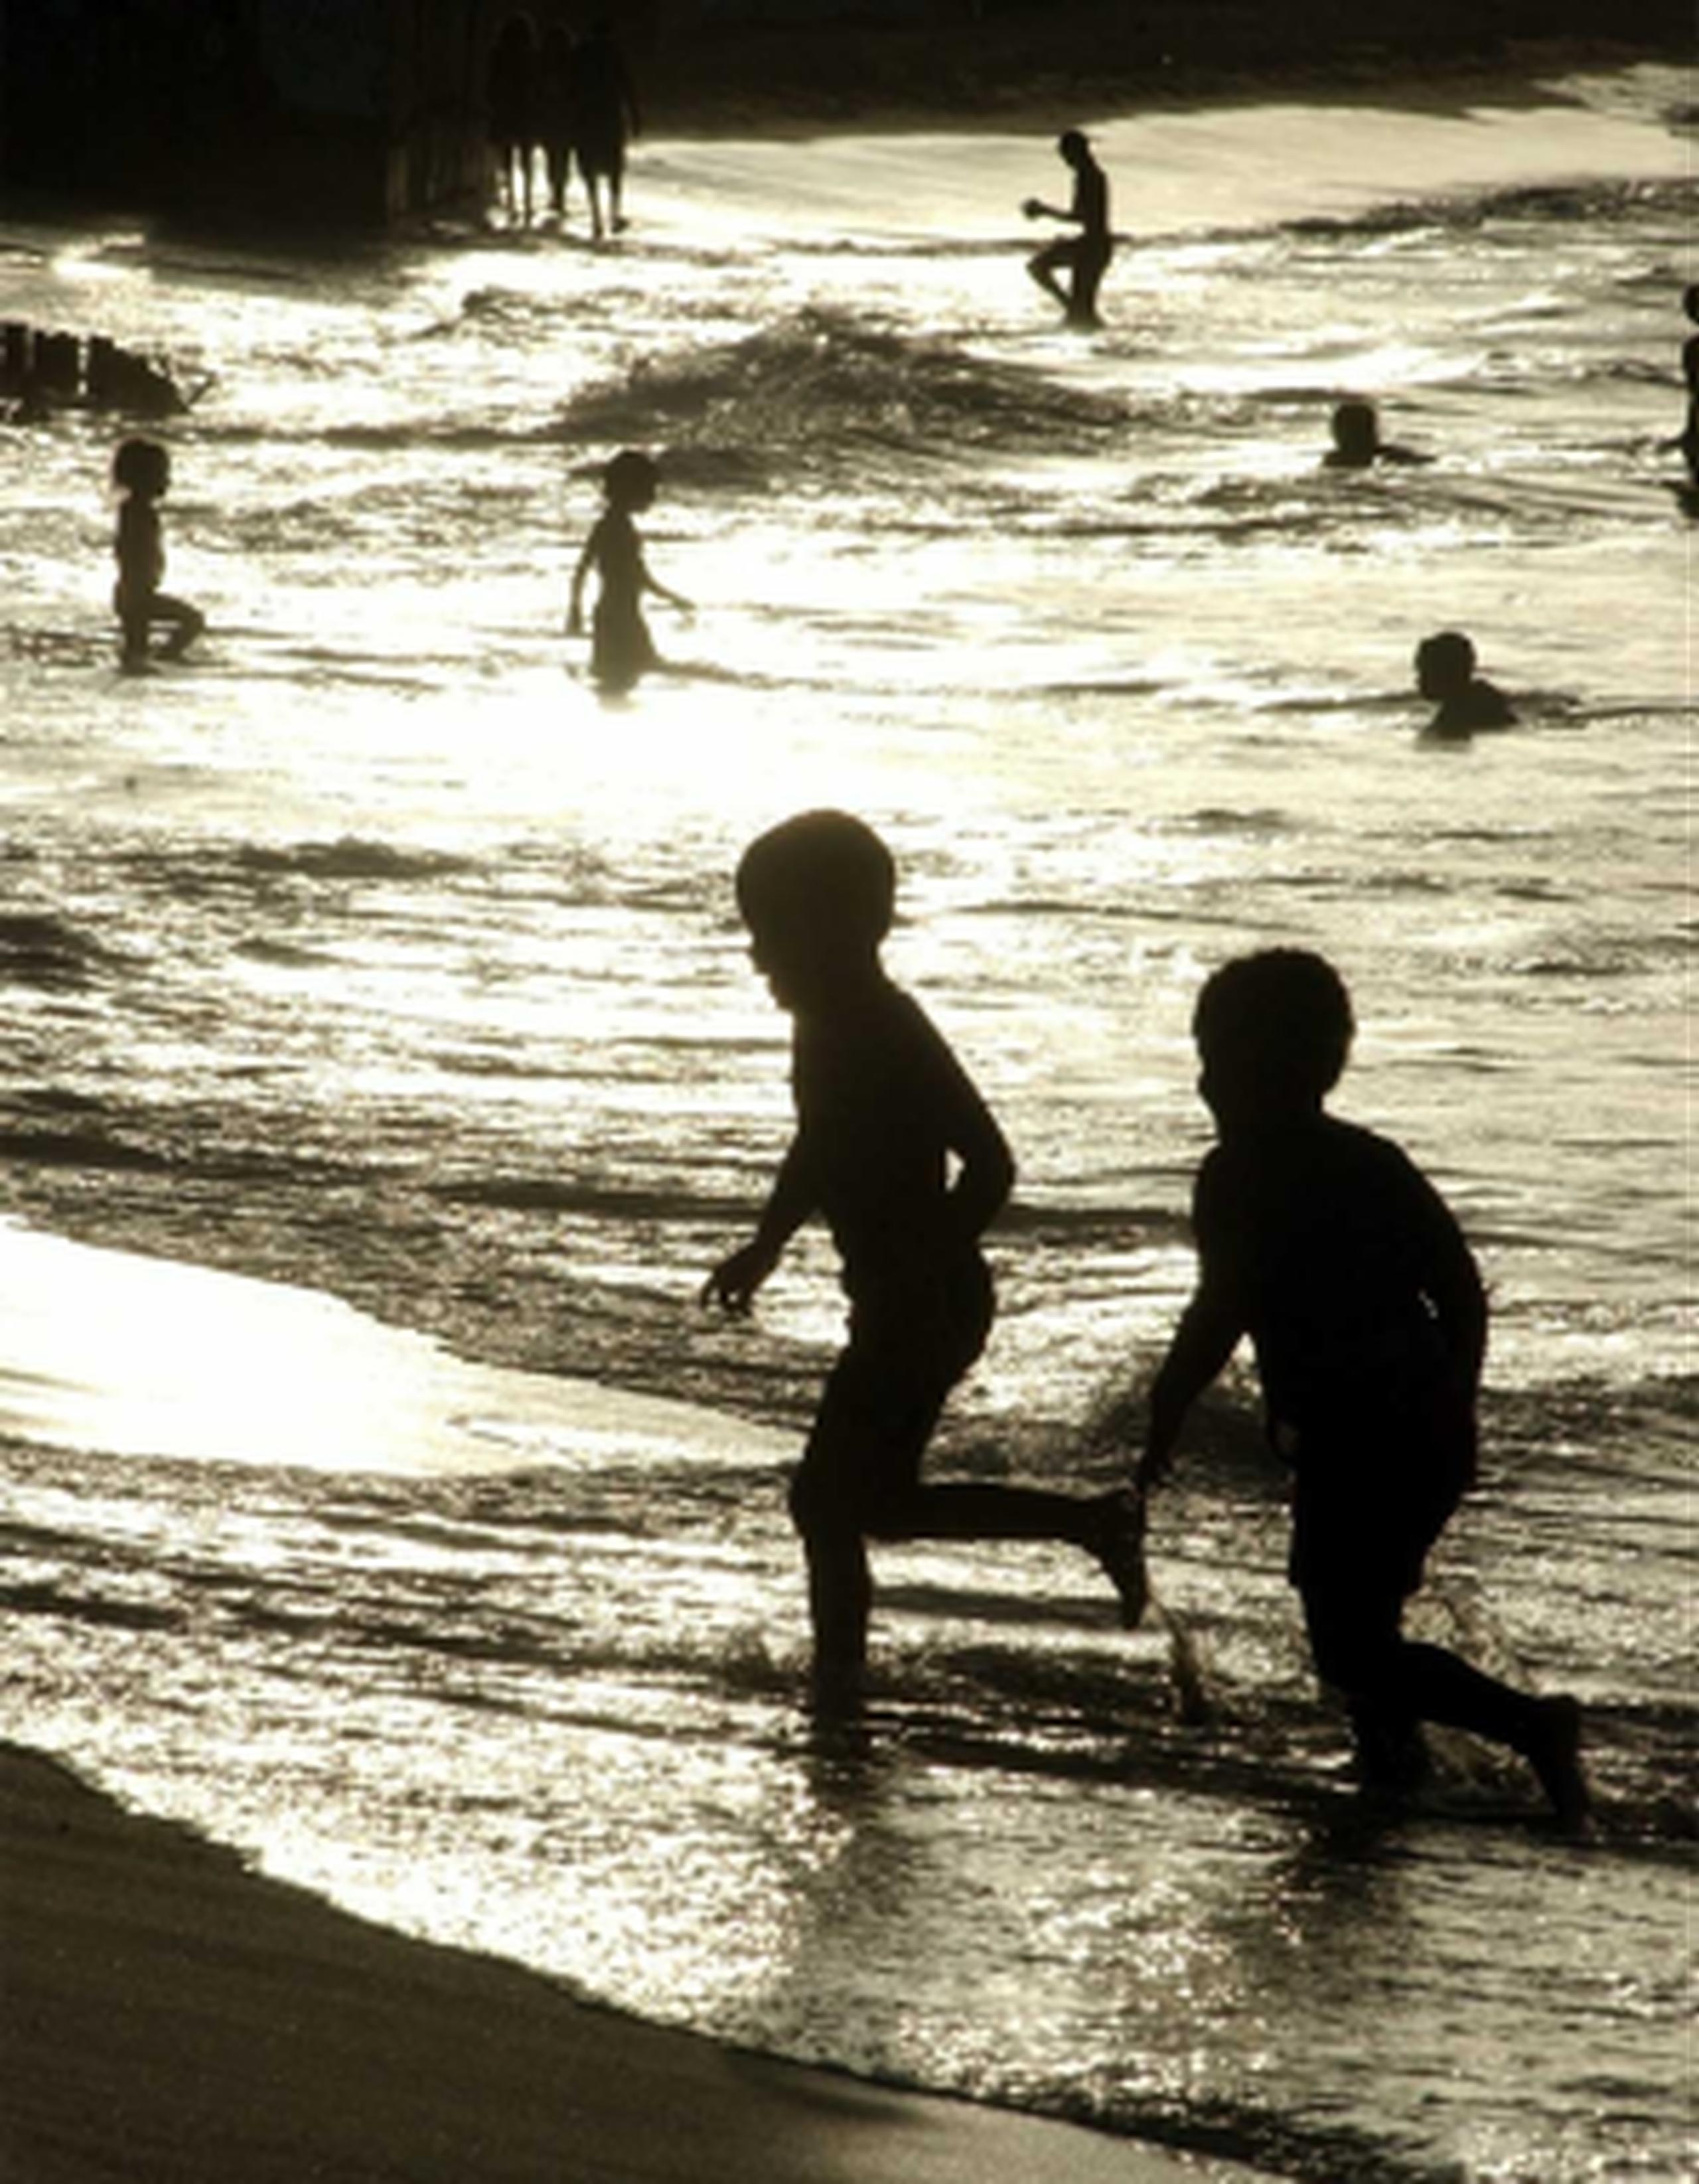 EL Departamento de la Familia visitó varias playas de la zona de San Juan y enfatizó la importancia de estar muy atentos a los menores de edad durante los días de playa. (Archivo)
